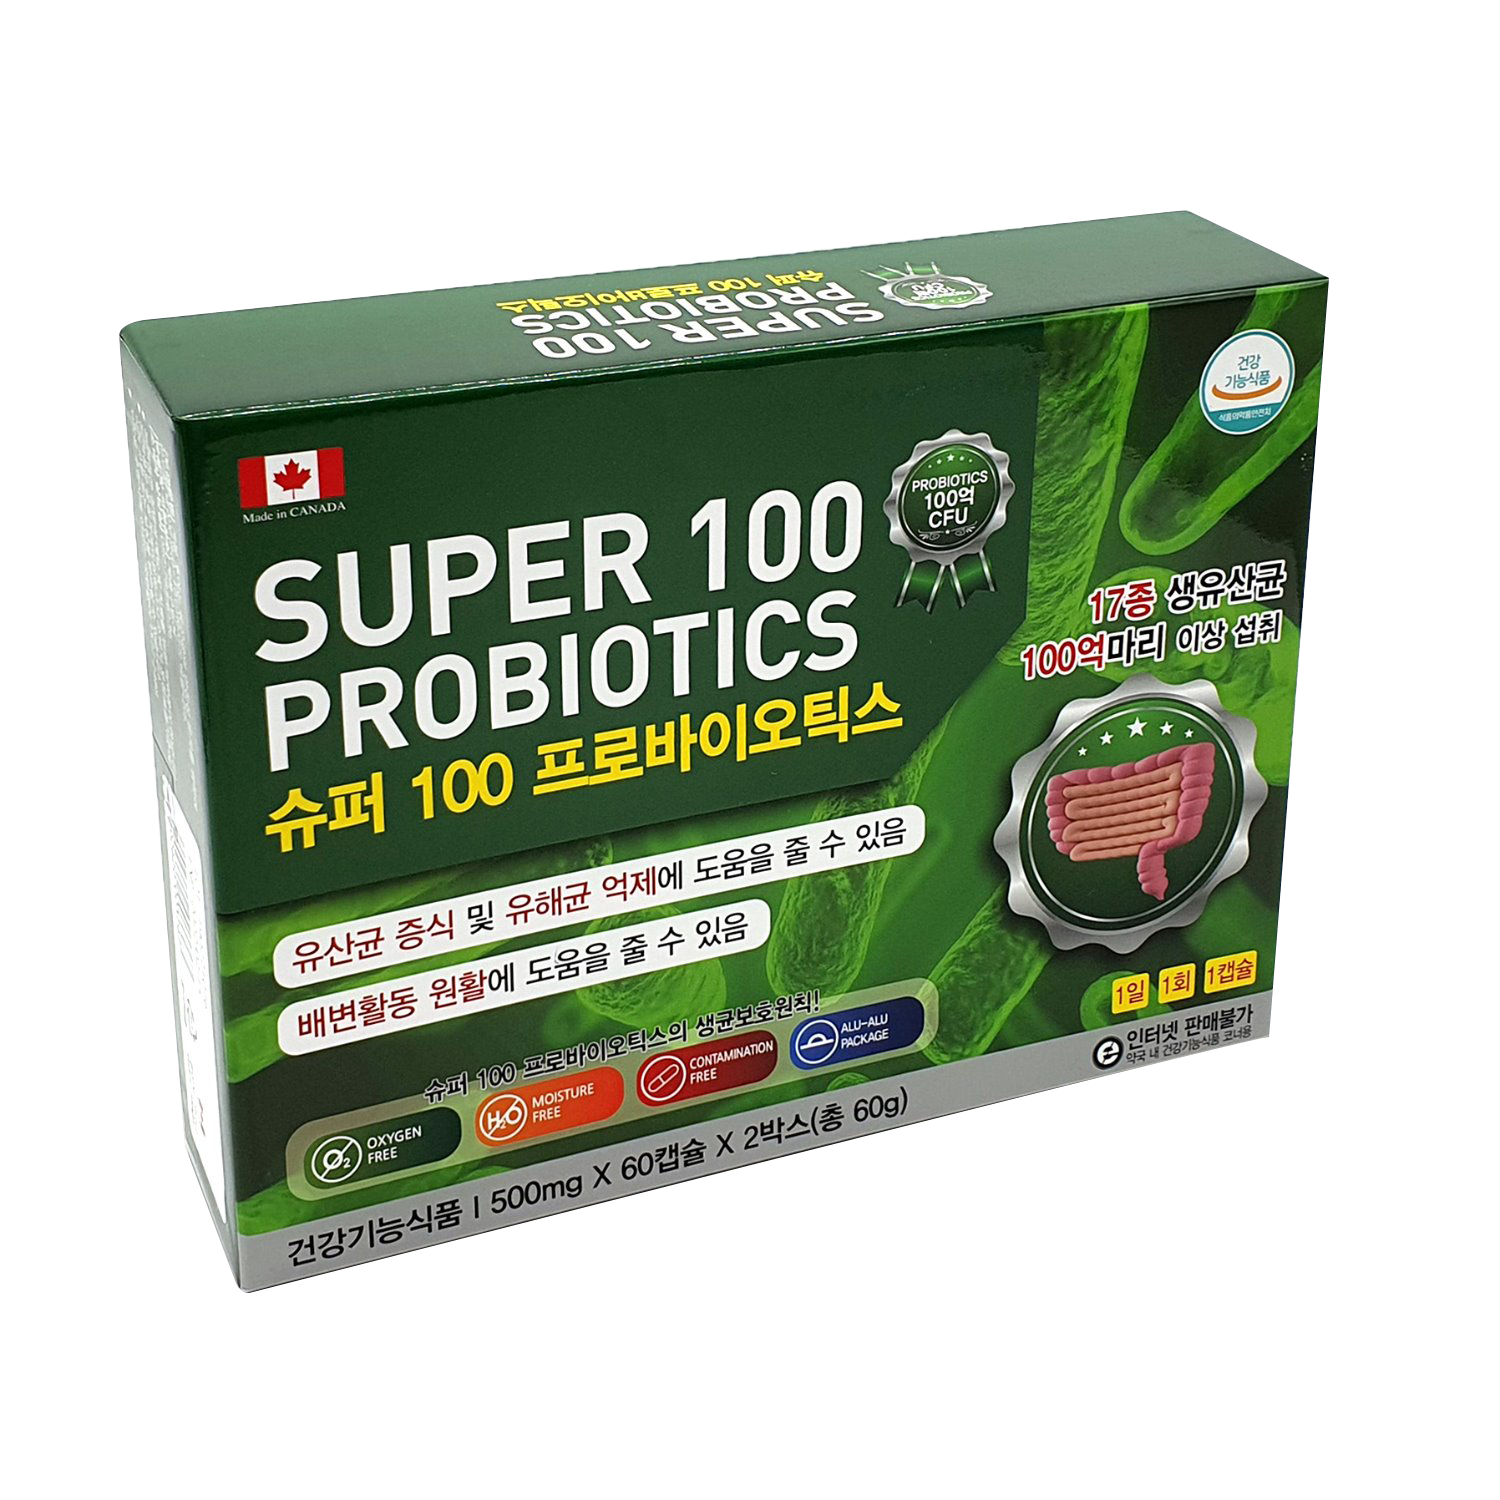 슈퍼100 프로바이오틱스 하루섭취 유산균 17종 100억마리함유! 건강한 장을 위한 건강기능식품 120캡슐 (4개월분)